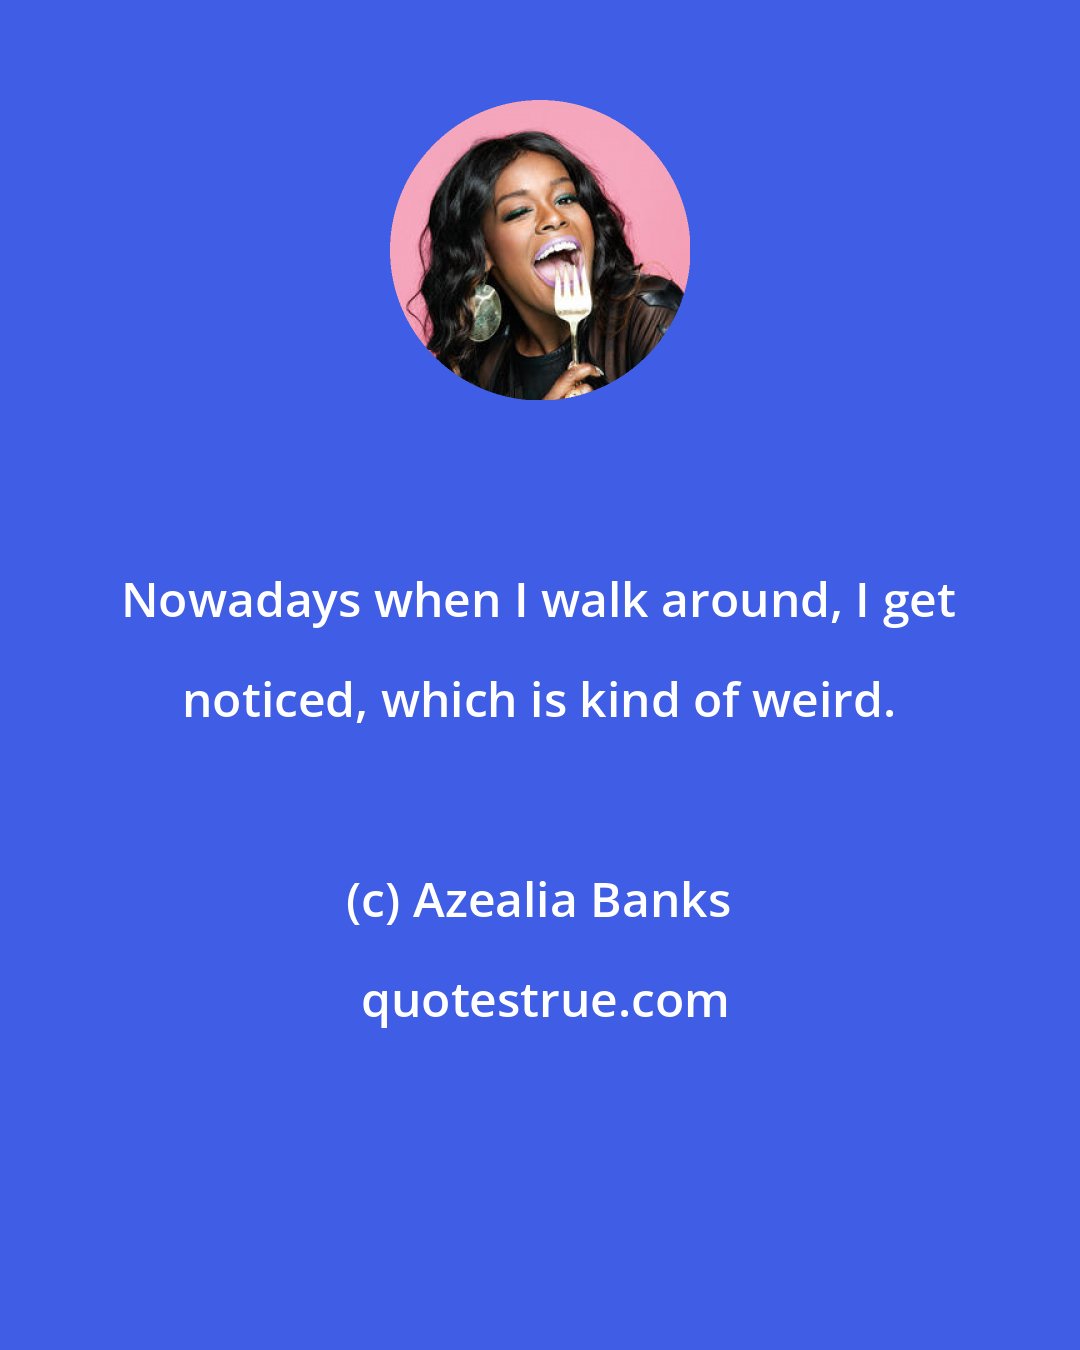 Azealia Banks: Nowadays when I walk around, I get noticed, which is kind of weird.